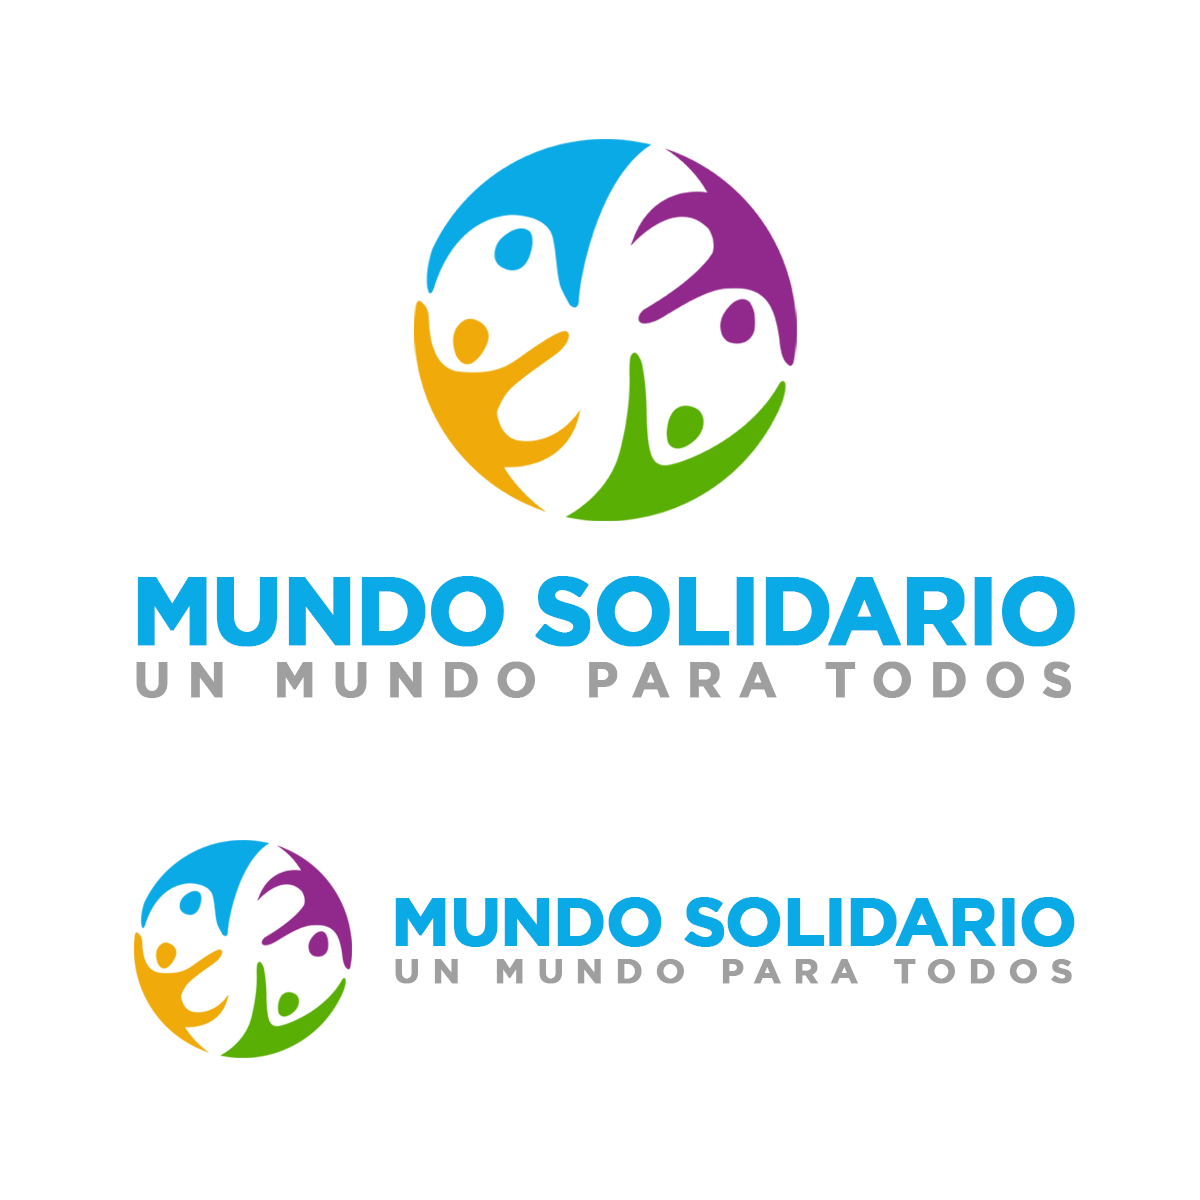 Logo Design entry 1897157 submitted by GeraltofRivia to the Logo Design for Mundo Solidario,  run by alxmalaga